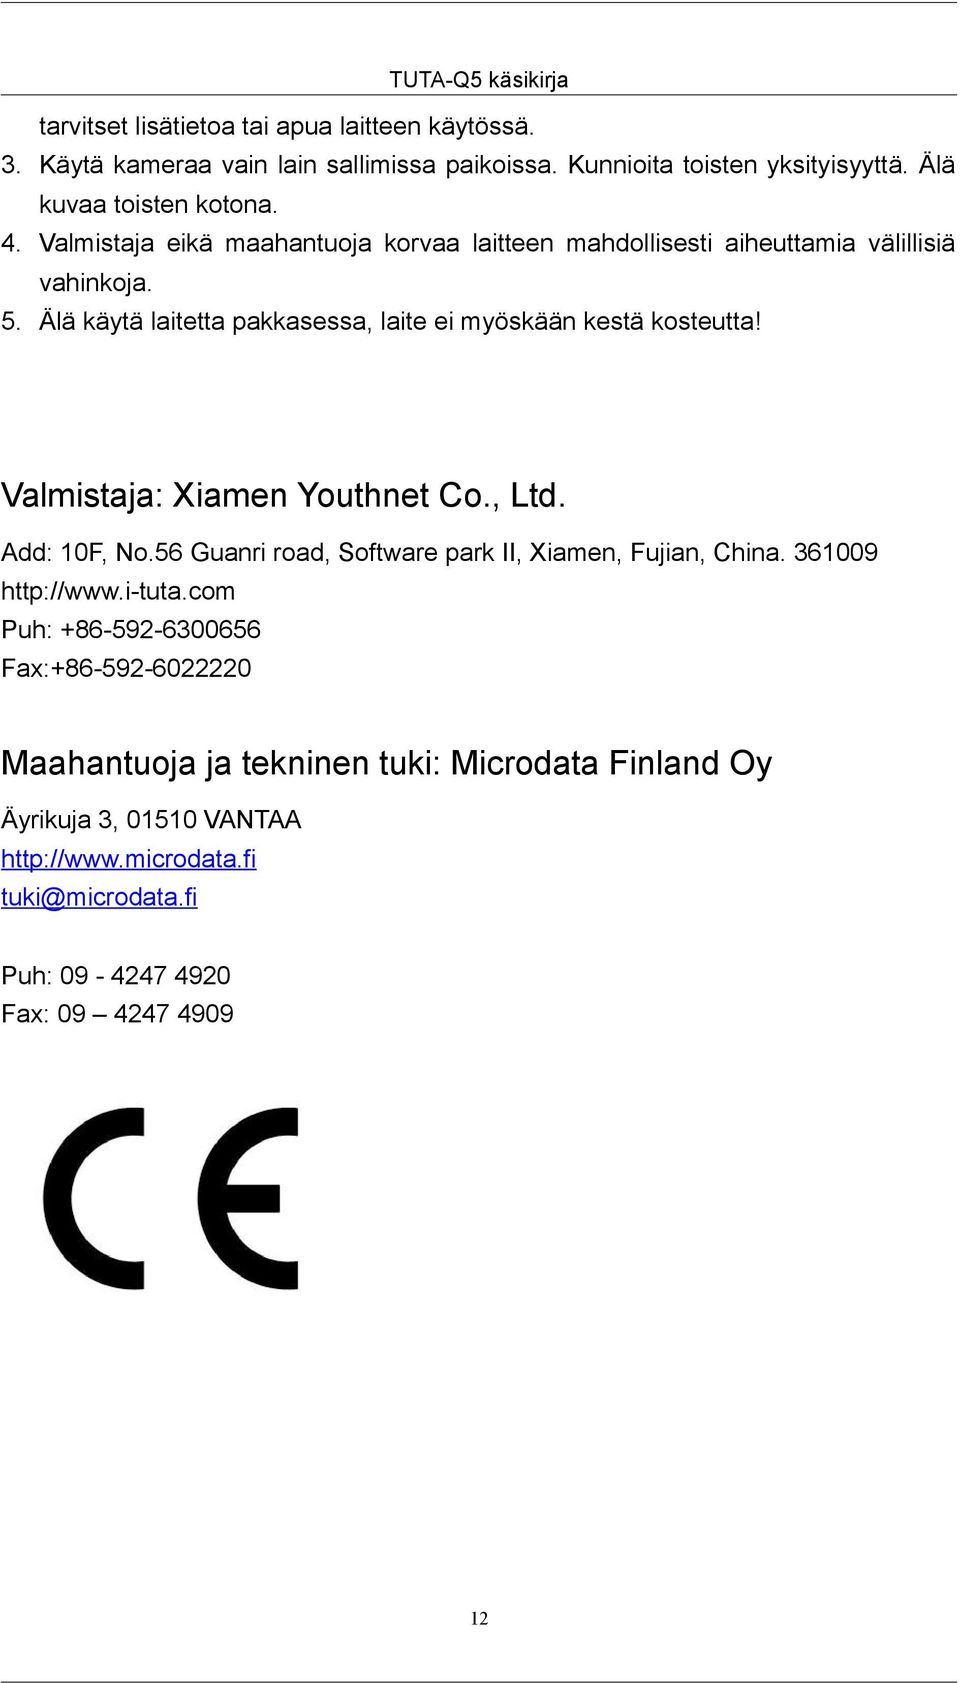 Valmistaja: Xiamen Youthnet Co., Ltd. Add: 10F, No.56 Guanri road, Software park II, Xiamen, Fujian, China. 361009 http://www.i-tuta.